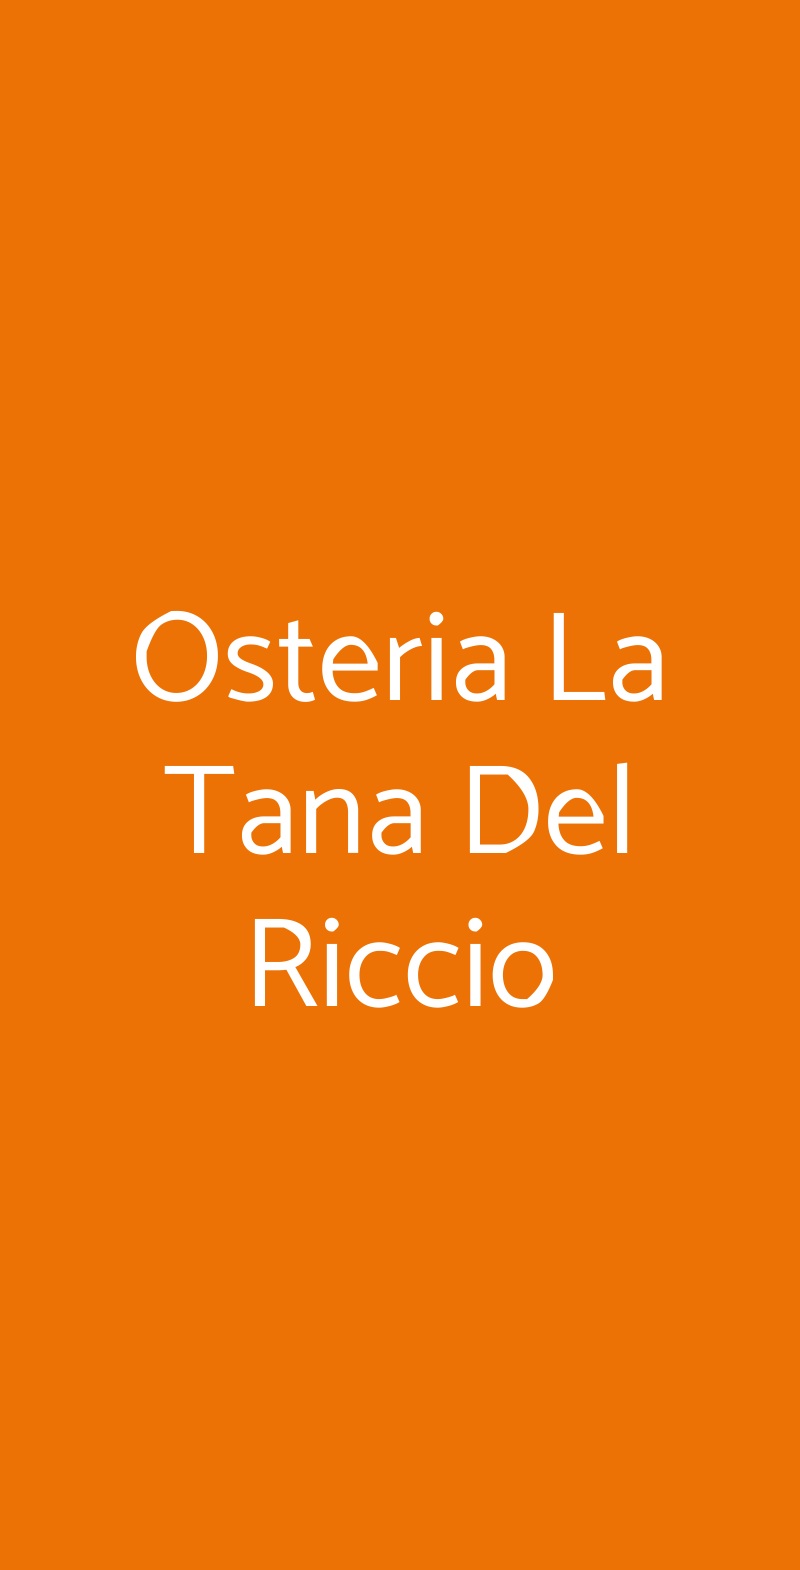 Osteria La Tana Del Riccio Crespina menù 1 pagina